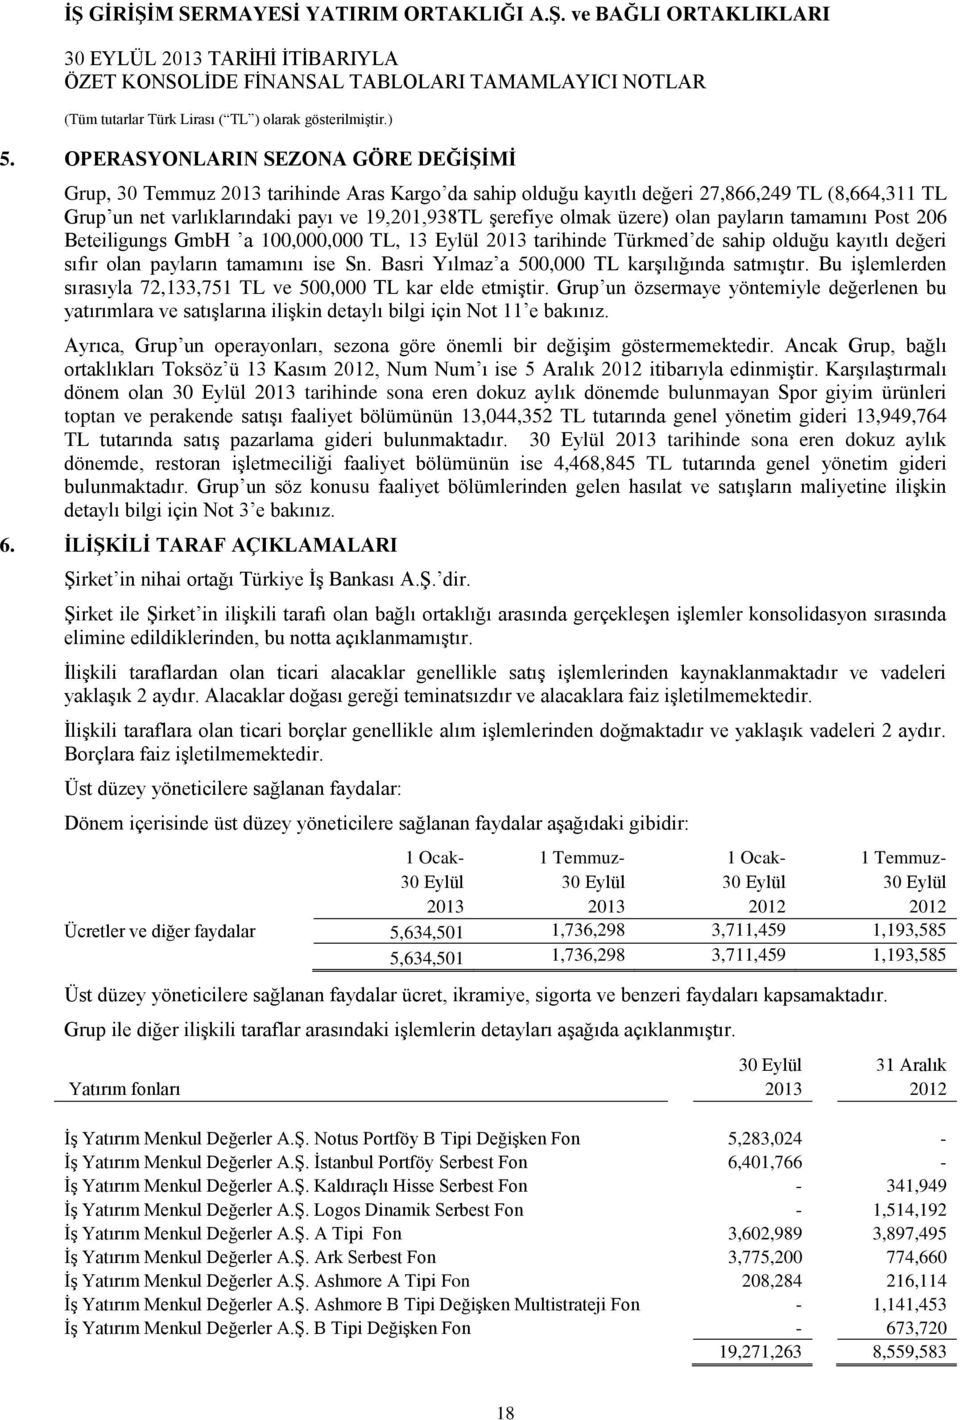 olmak üzere) olan payların tamamını Post 206 Beteiligungs GmbH a 100,000,000 TL, 13 Eylül 2013 tarihinde Türkmed de sahip olduğu kayıtlı değeri sıfır olan payların tamamını ise Sn.